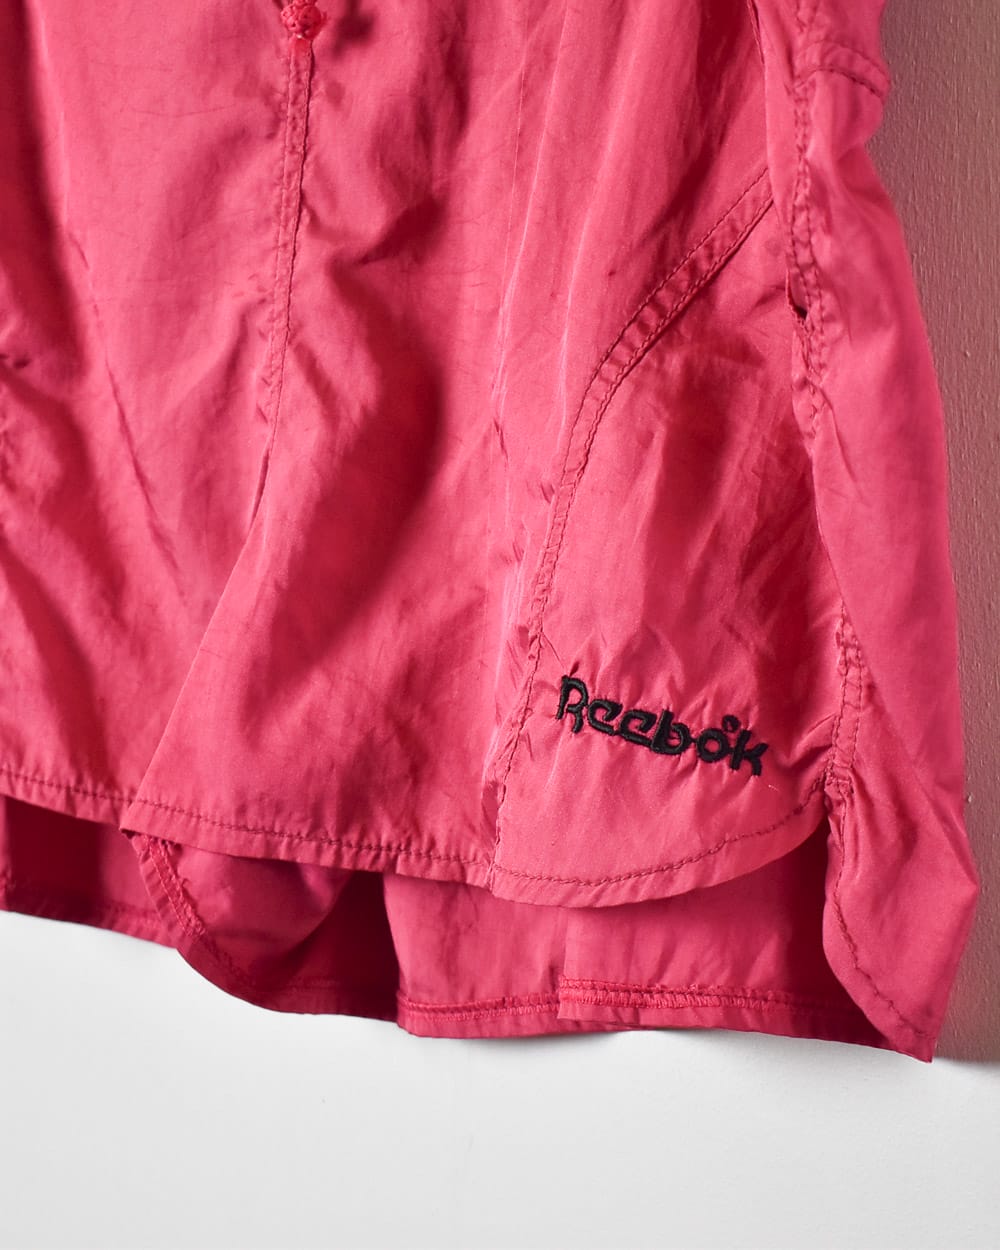 Pink Reebok Short Shorts - X-Large